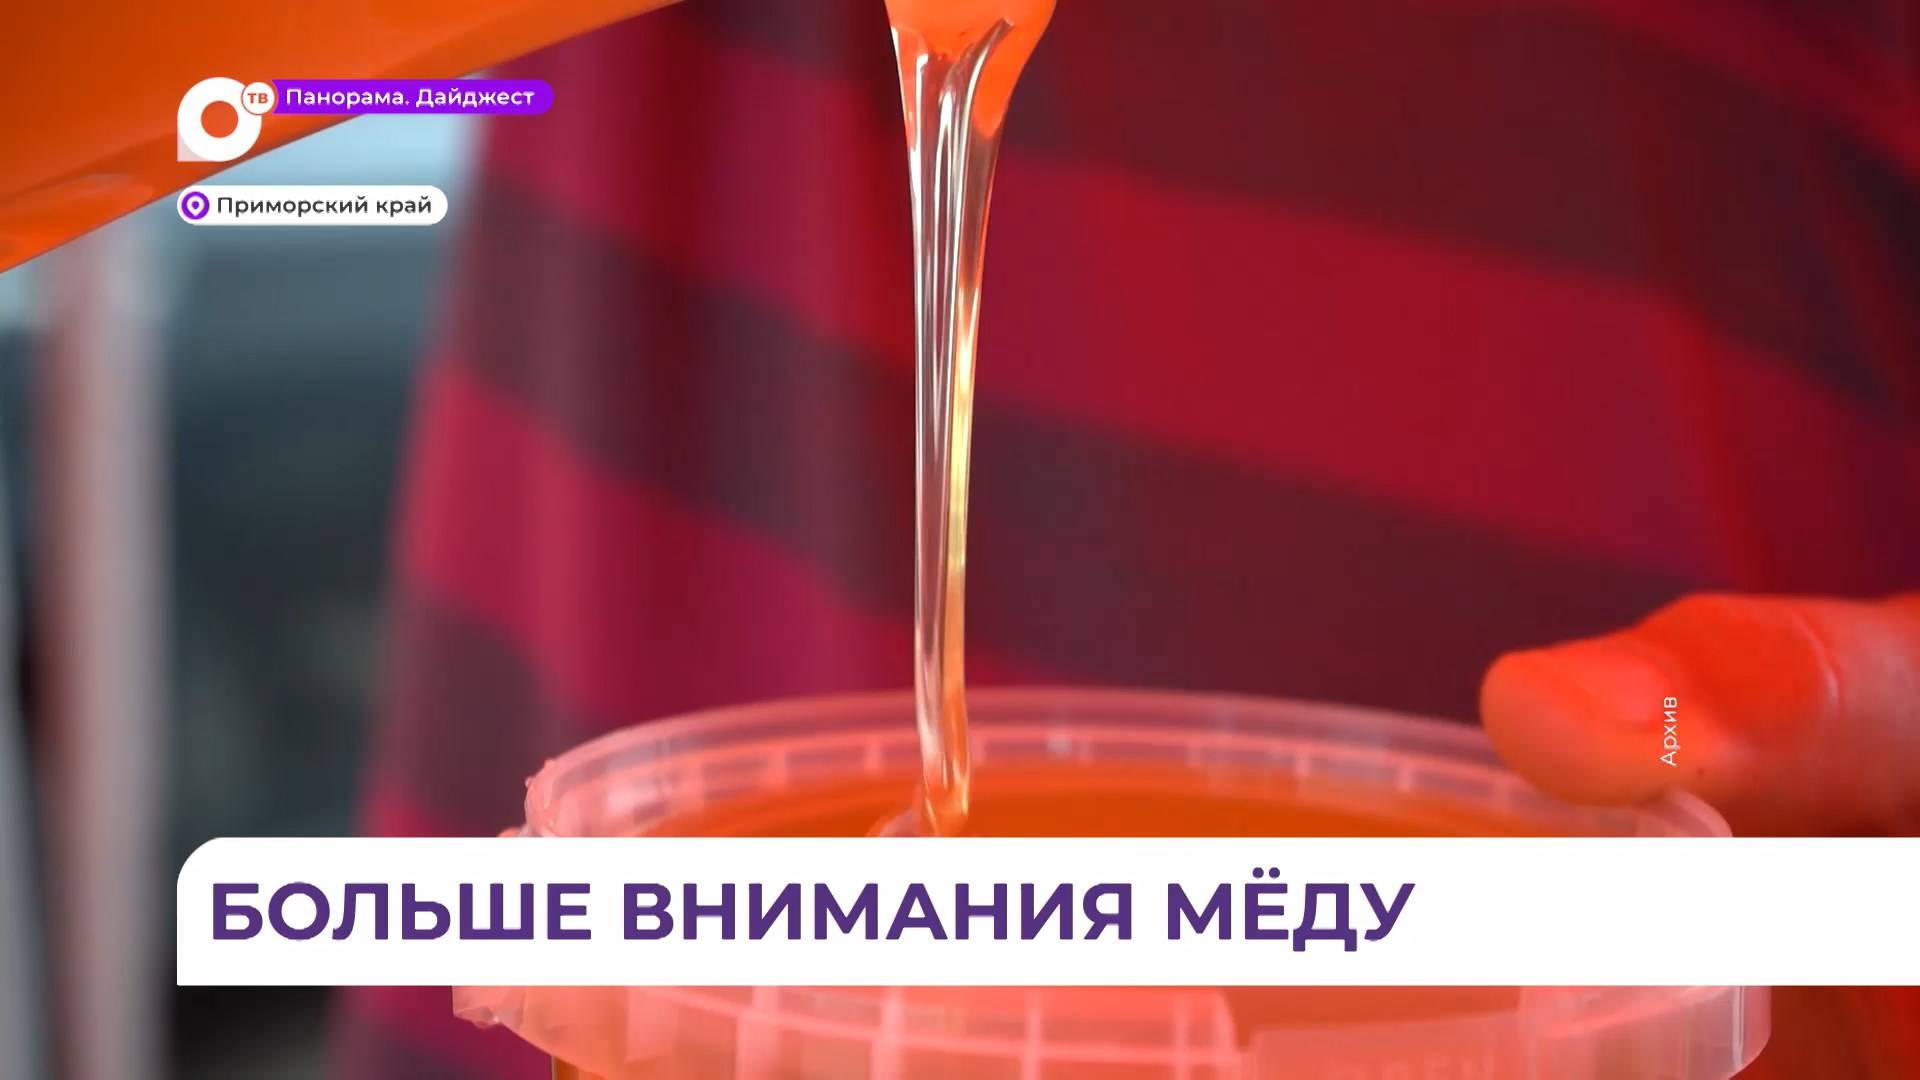 Олег Кожемяко: экологически чистый липовый мёд из приморской тайги имеет огромный потенциал